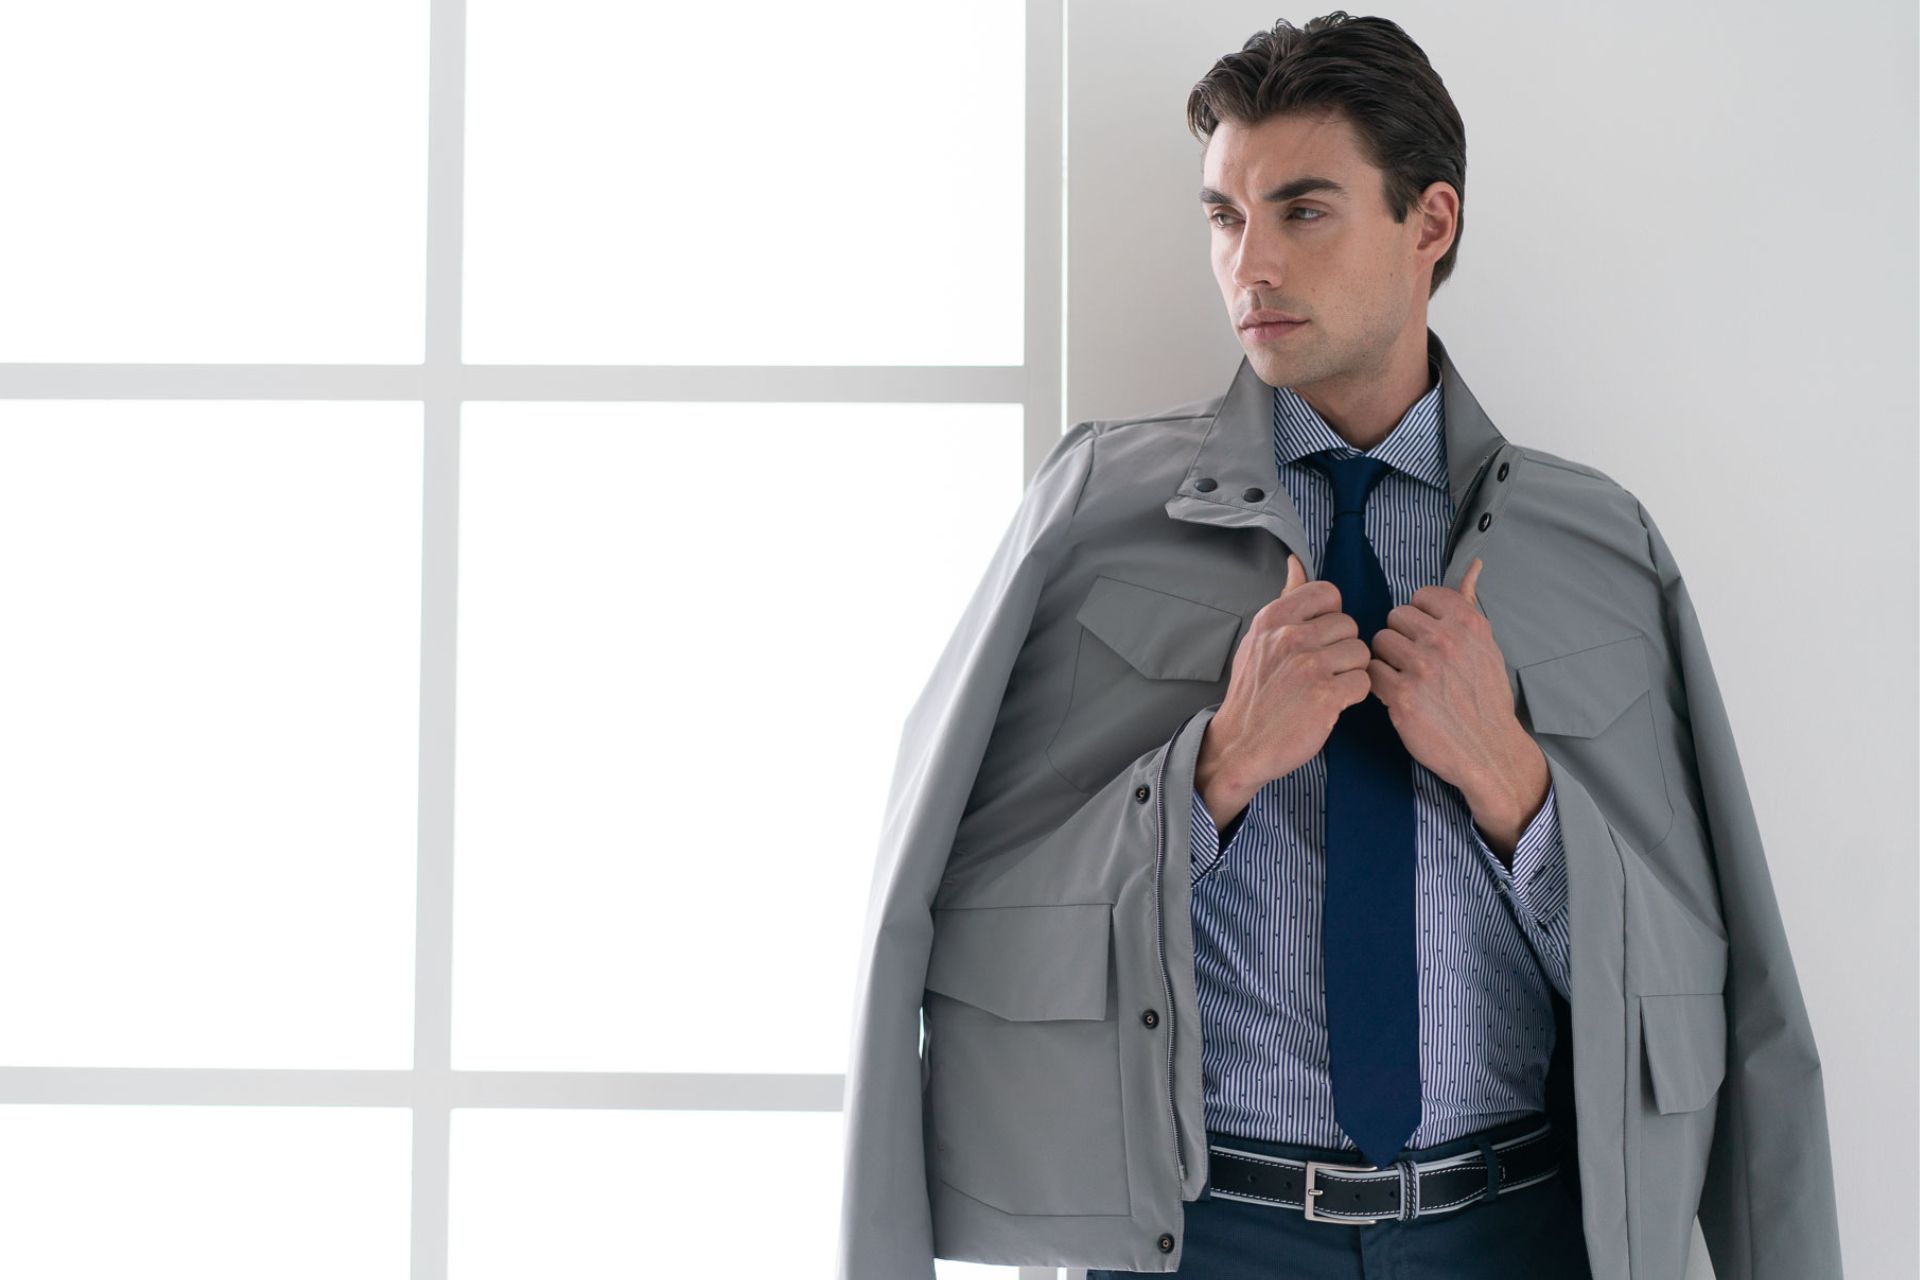 ragazzo con giubbino field jacket grigio, camicia fil coupé e cravatta